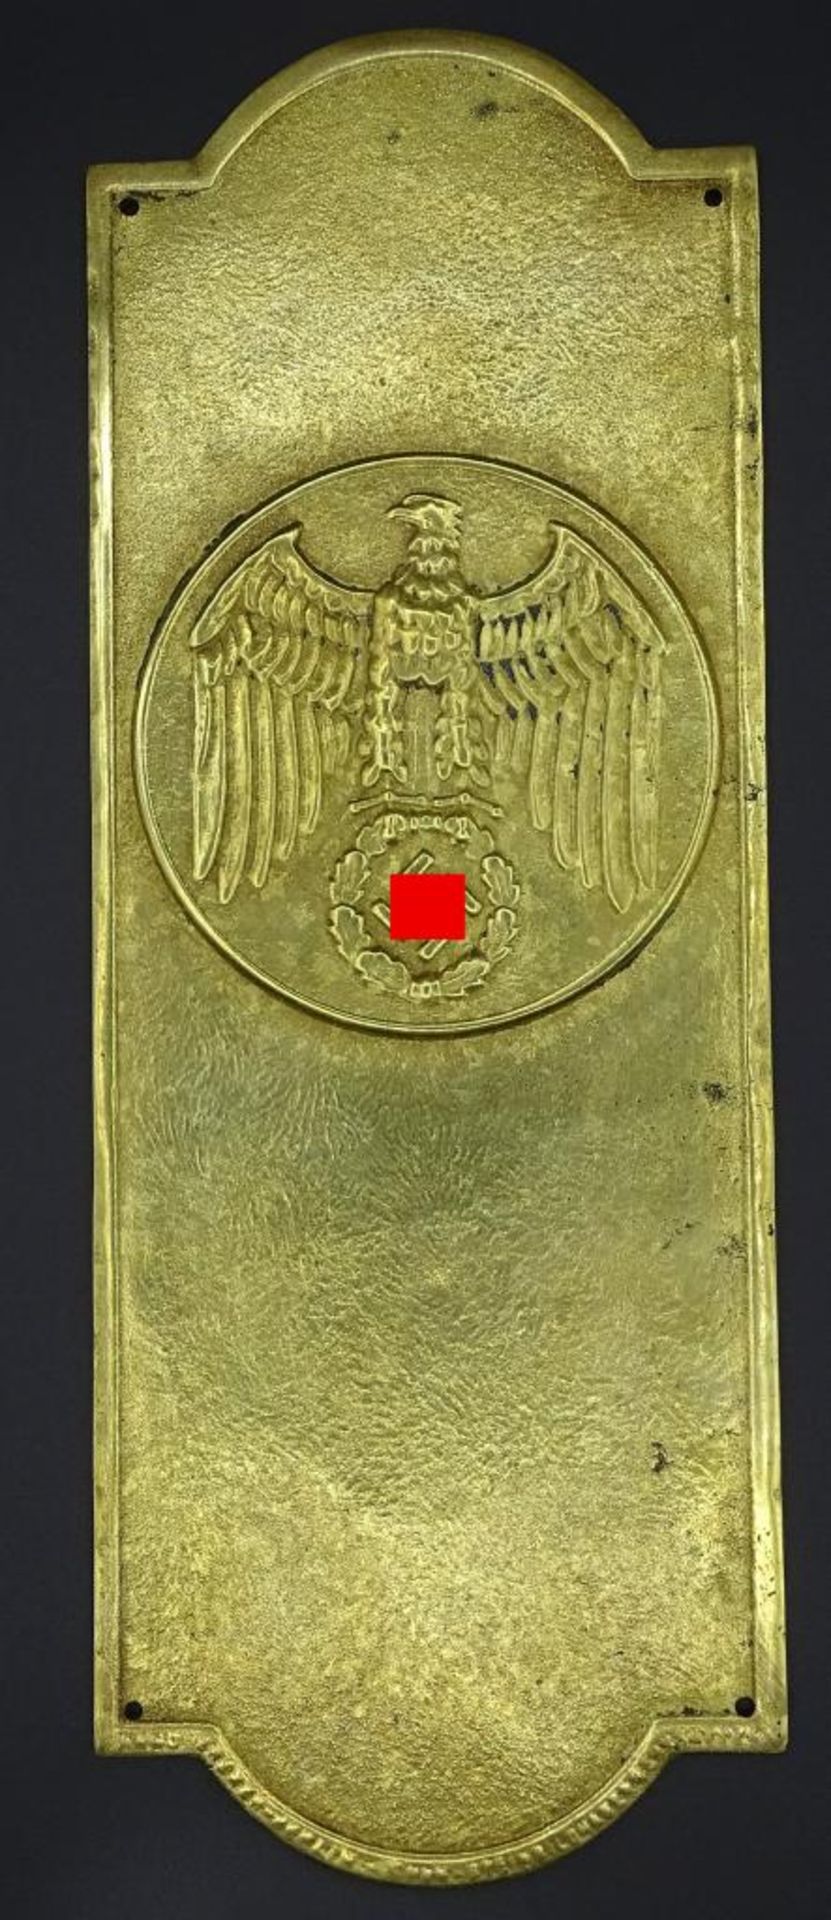 Messing Plakette mit Hoheitszeichen,25x9,3cm,